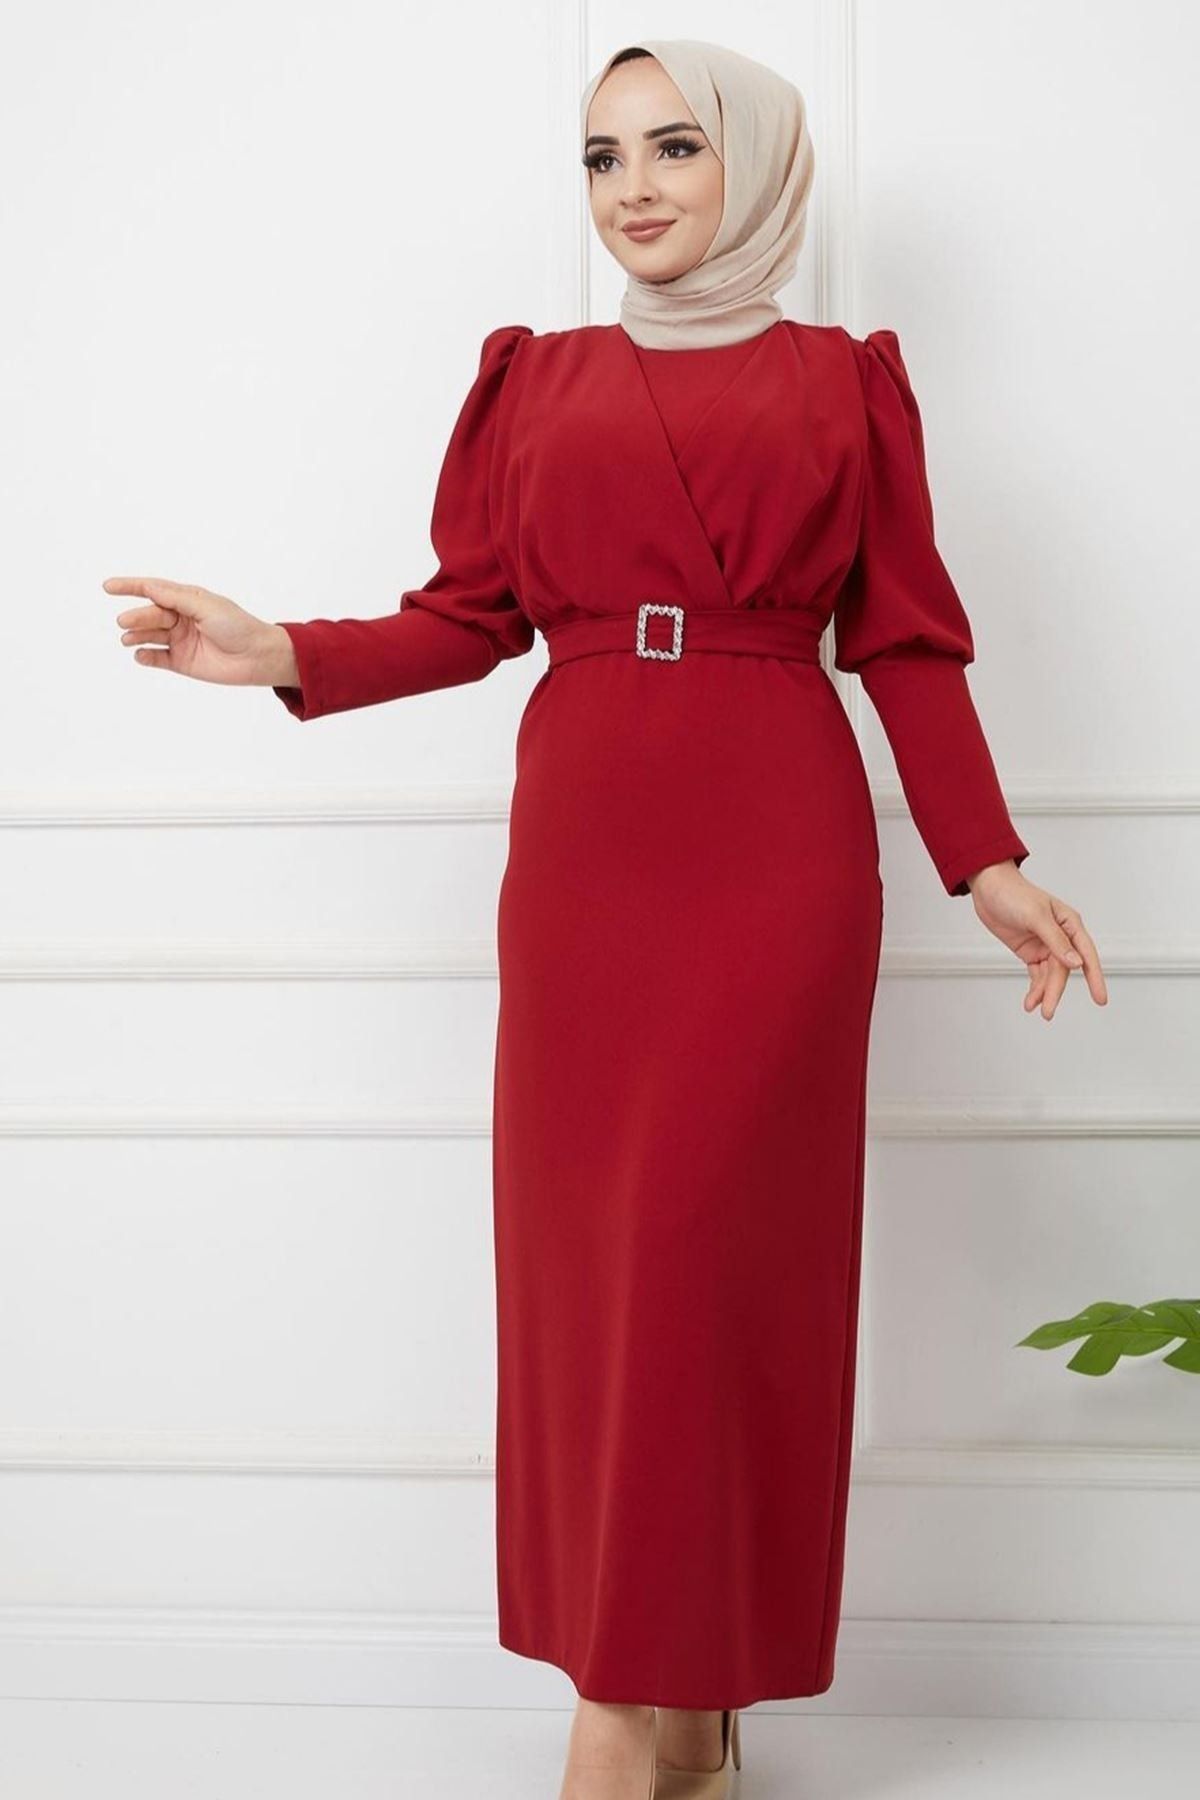 Genel Markalar Önü Çapraz Detay Balon Kol Kalem Elbise-ge5110-kırmızı